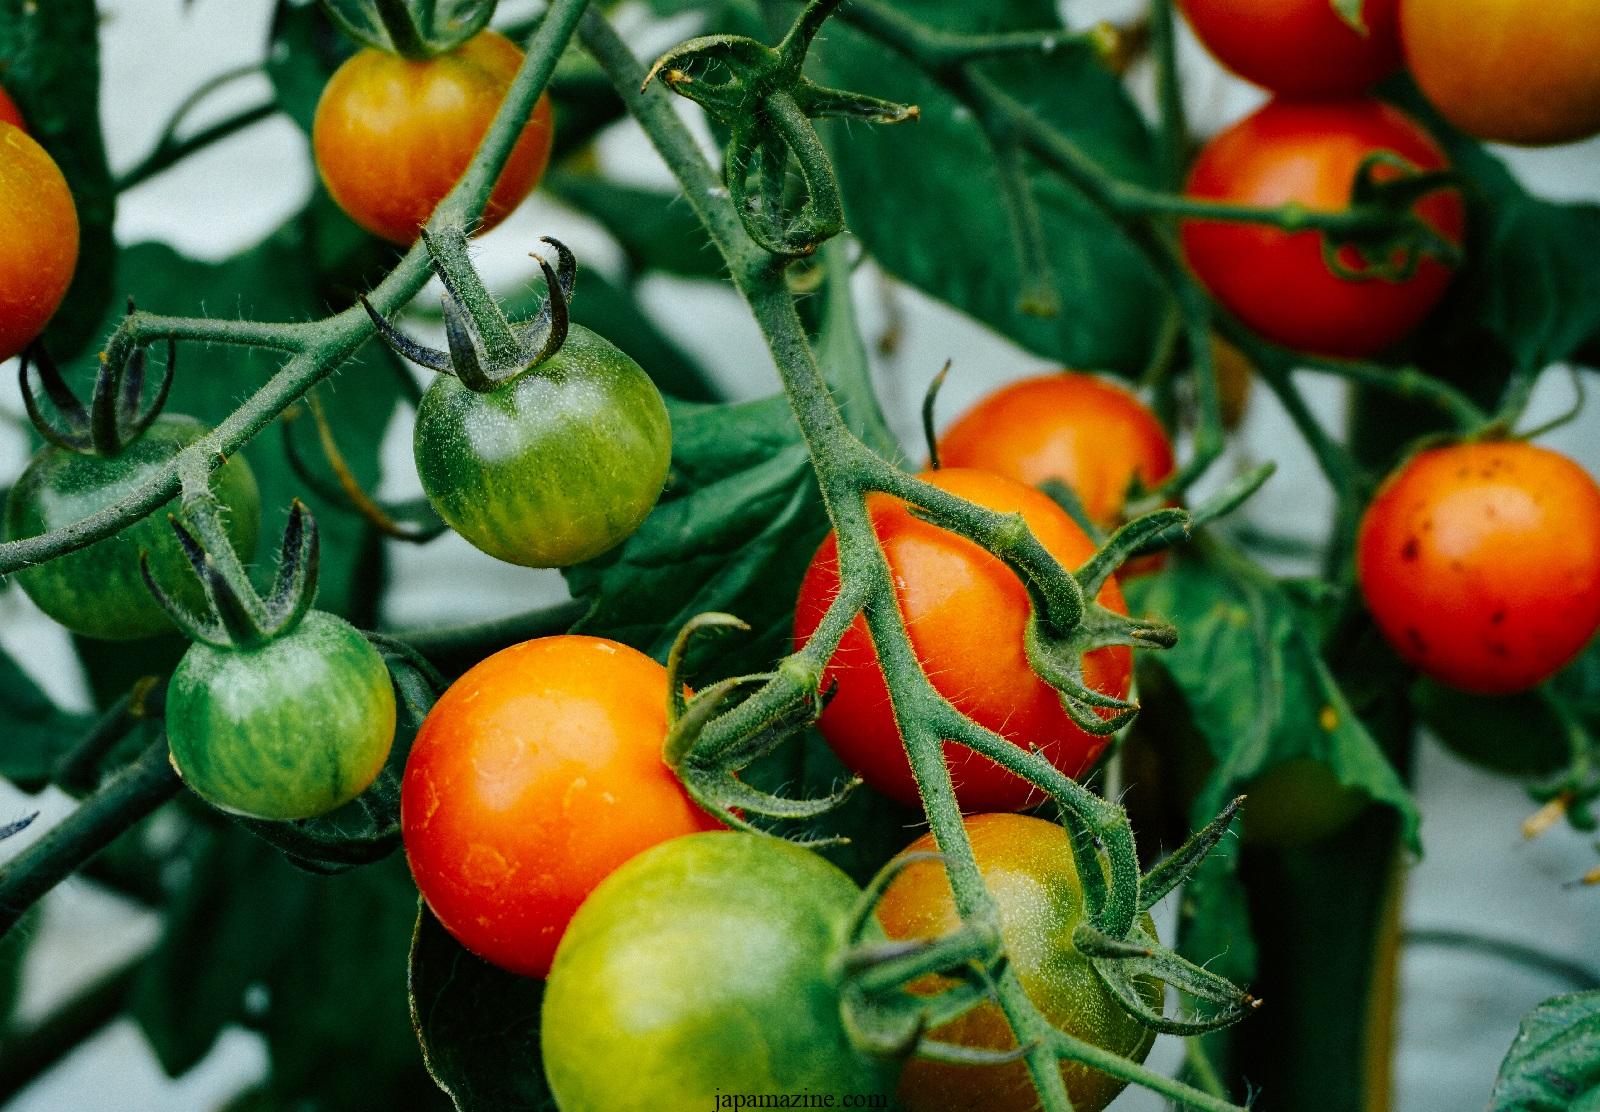 Posso cultivar tomates?